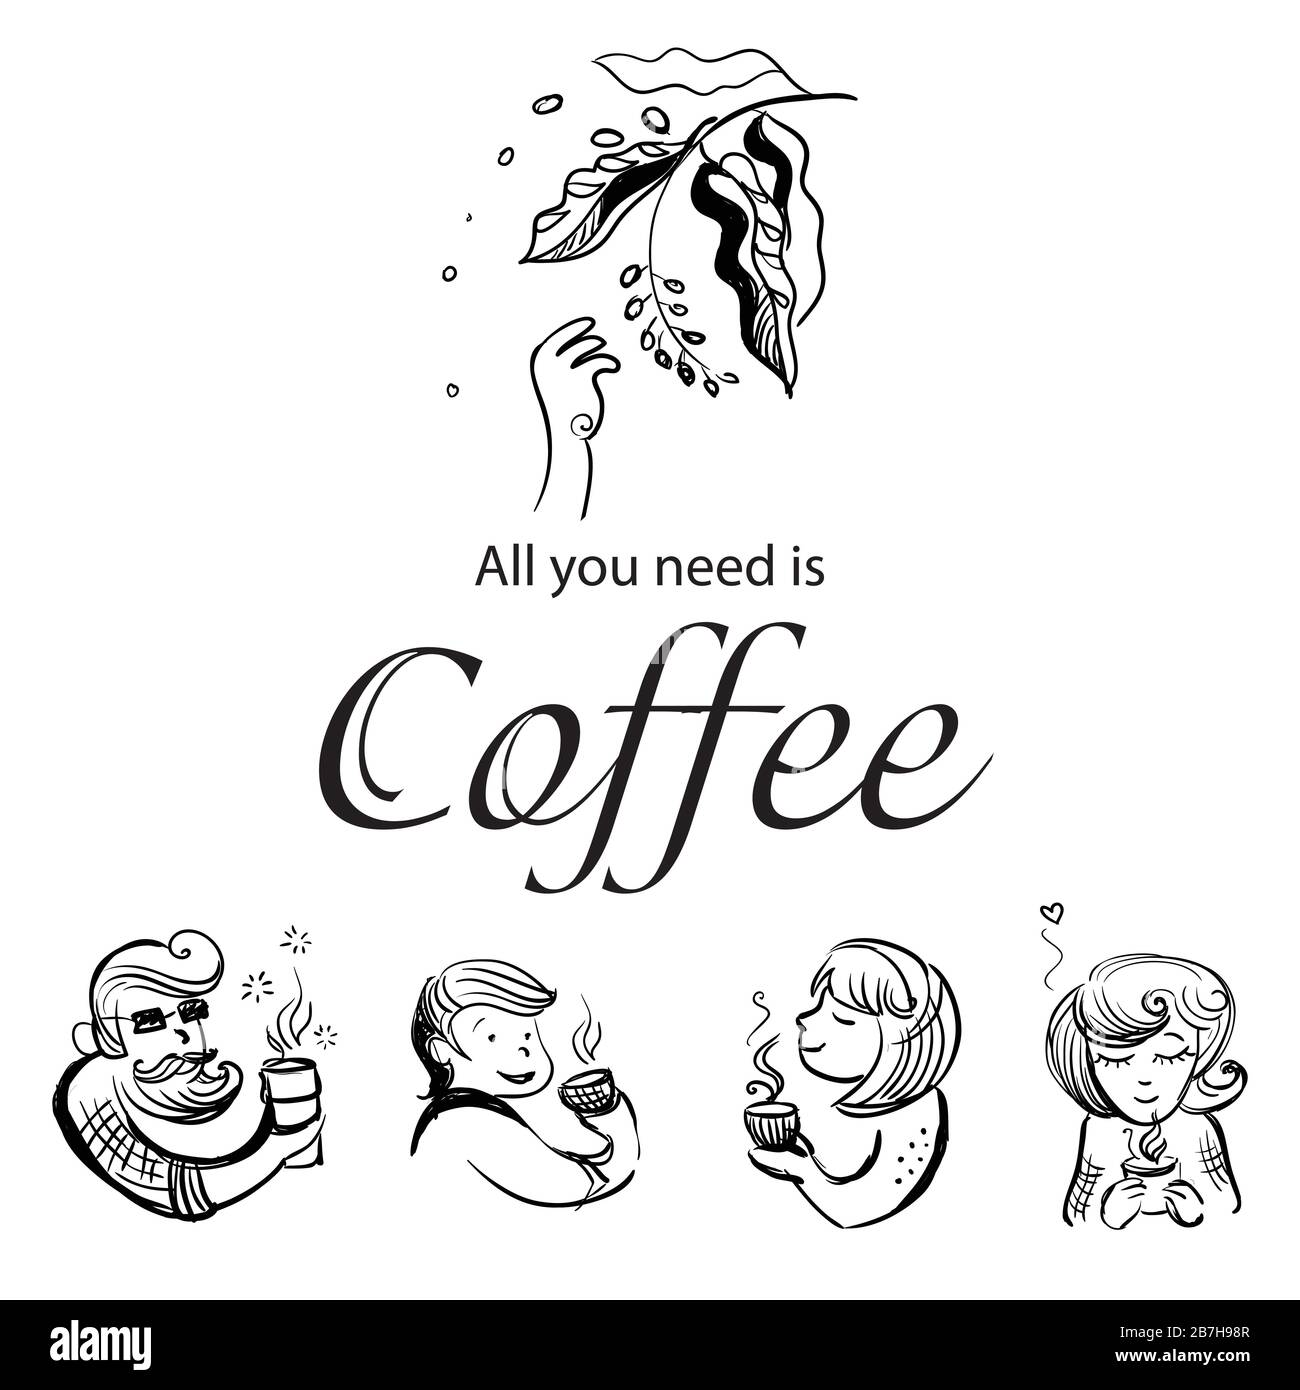 Illustrazione del disegno a mano vettoriale dei personaggi che amano il caffè isolato su sfondo bianco. Tutto ciò di cui hai bisogno è il caffè. Illustrazione di persone che bevono co Illustrazione Vettoriale